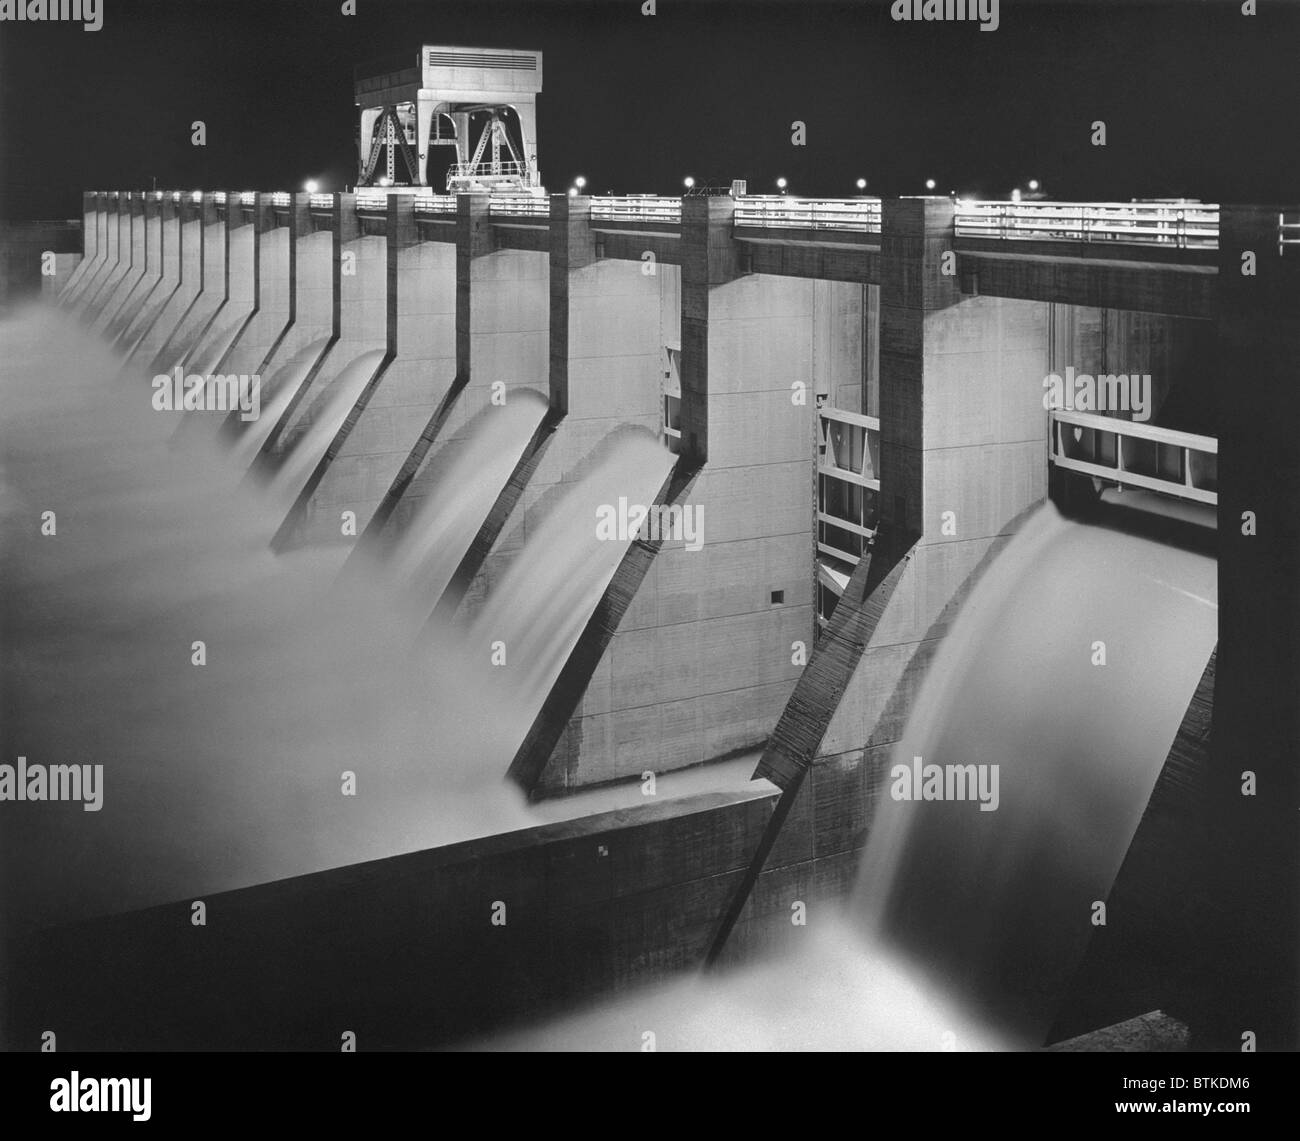 Chickamauga Staudamm von Tennessee Valley Authority (TVA), war ein New Deal Tiefbau Projekt Hochwasserschutz, Strom, bringen und die wirtschaftlicher Entwicklung der Depression Tennessee Valley. Ca. 1940. Stockfoto